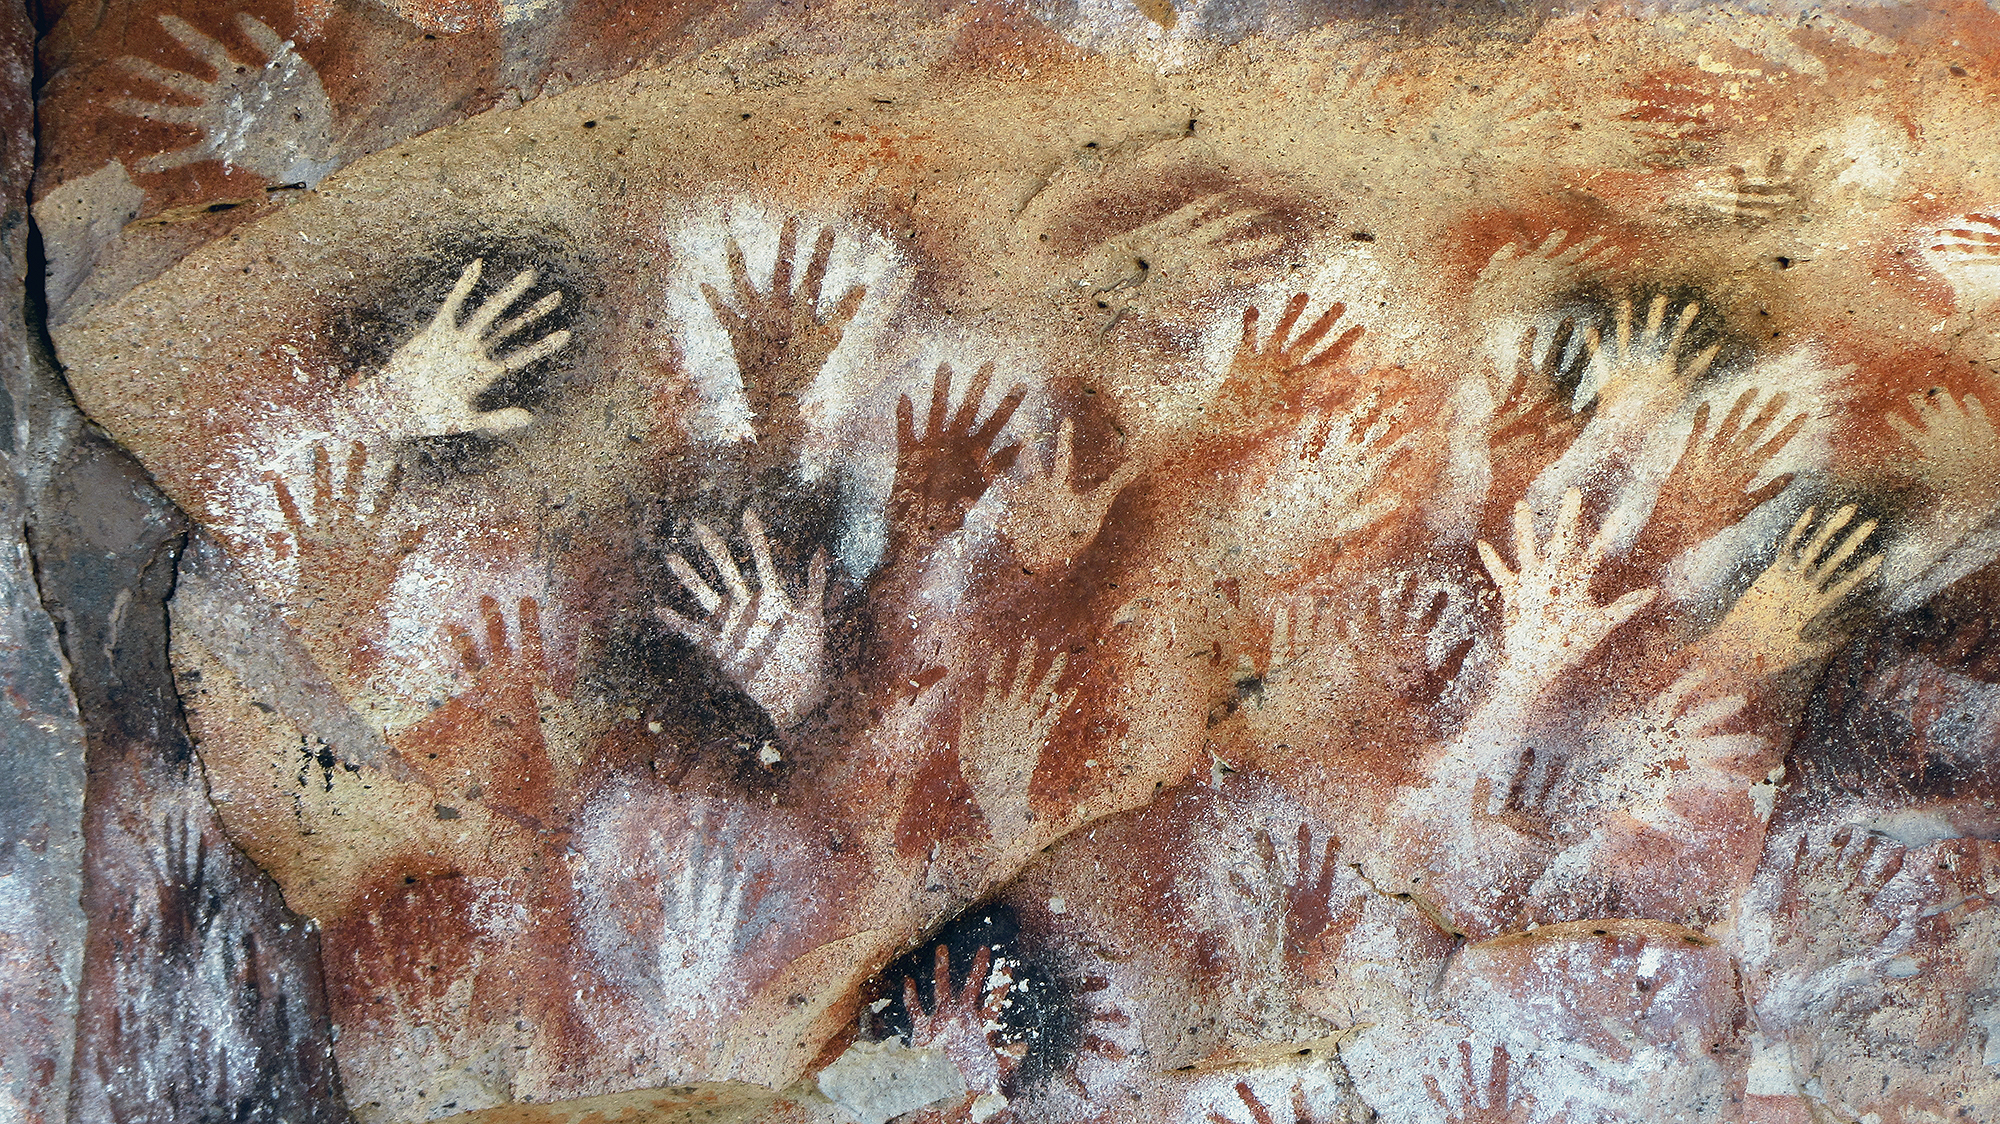 Cueva de las Manos Argentina Cave of the Hands